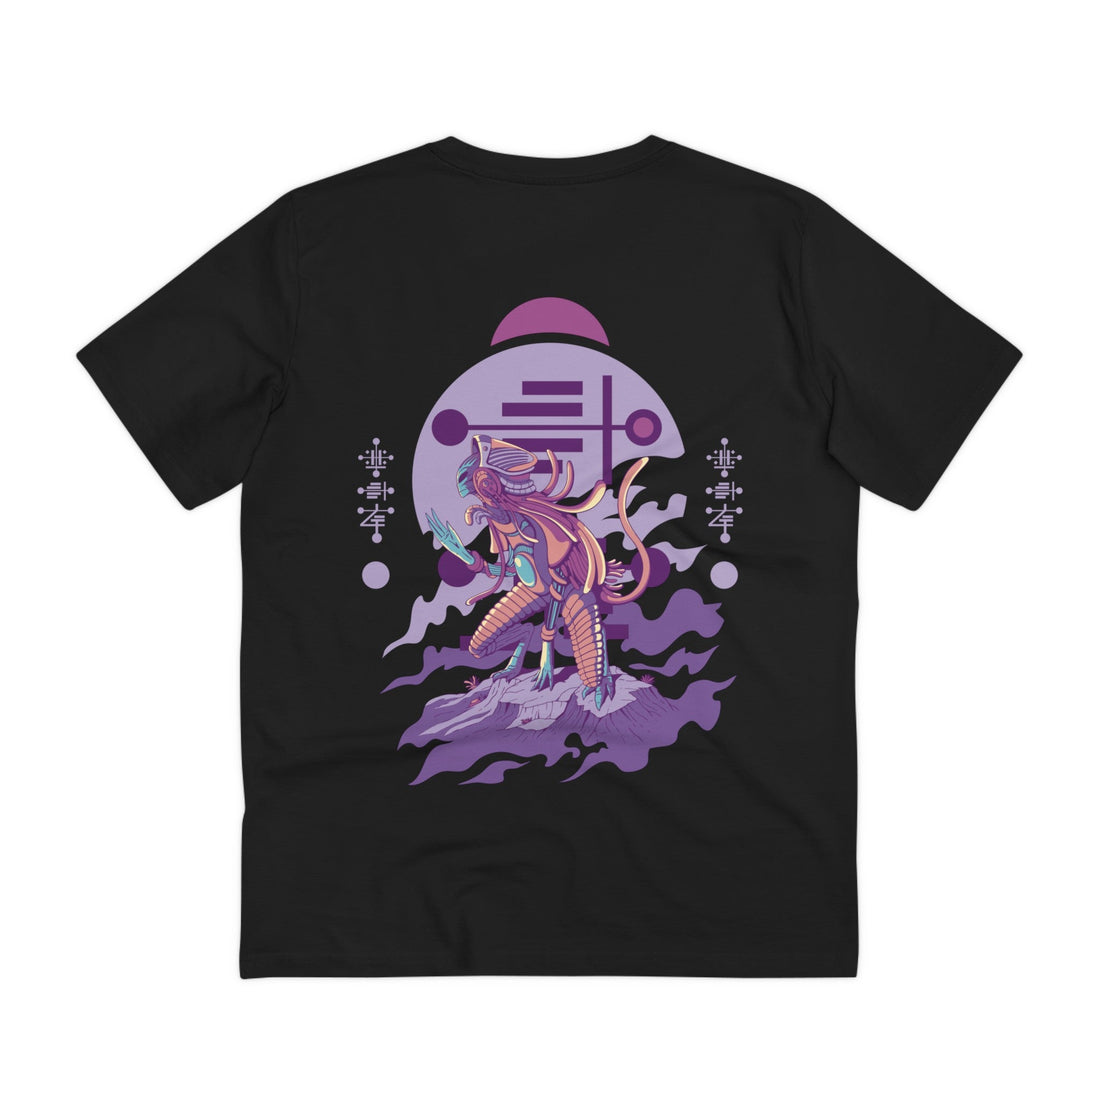 Printify T-Shirt Black / 2XS Alien Creature kneeling - Alien Warrior - Back Design